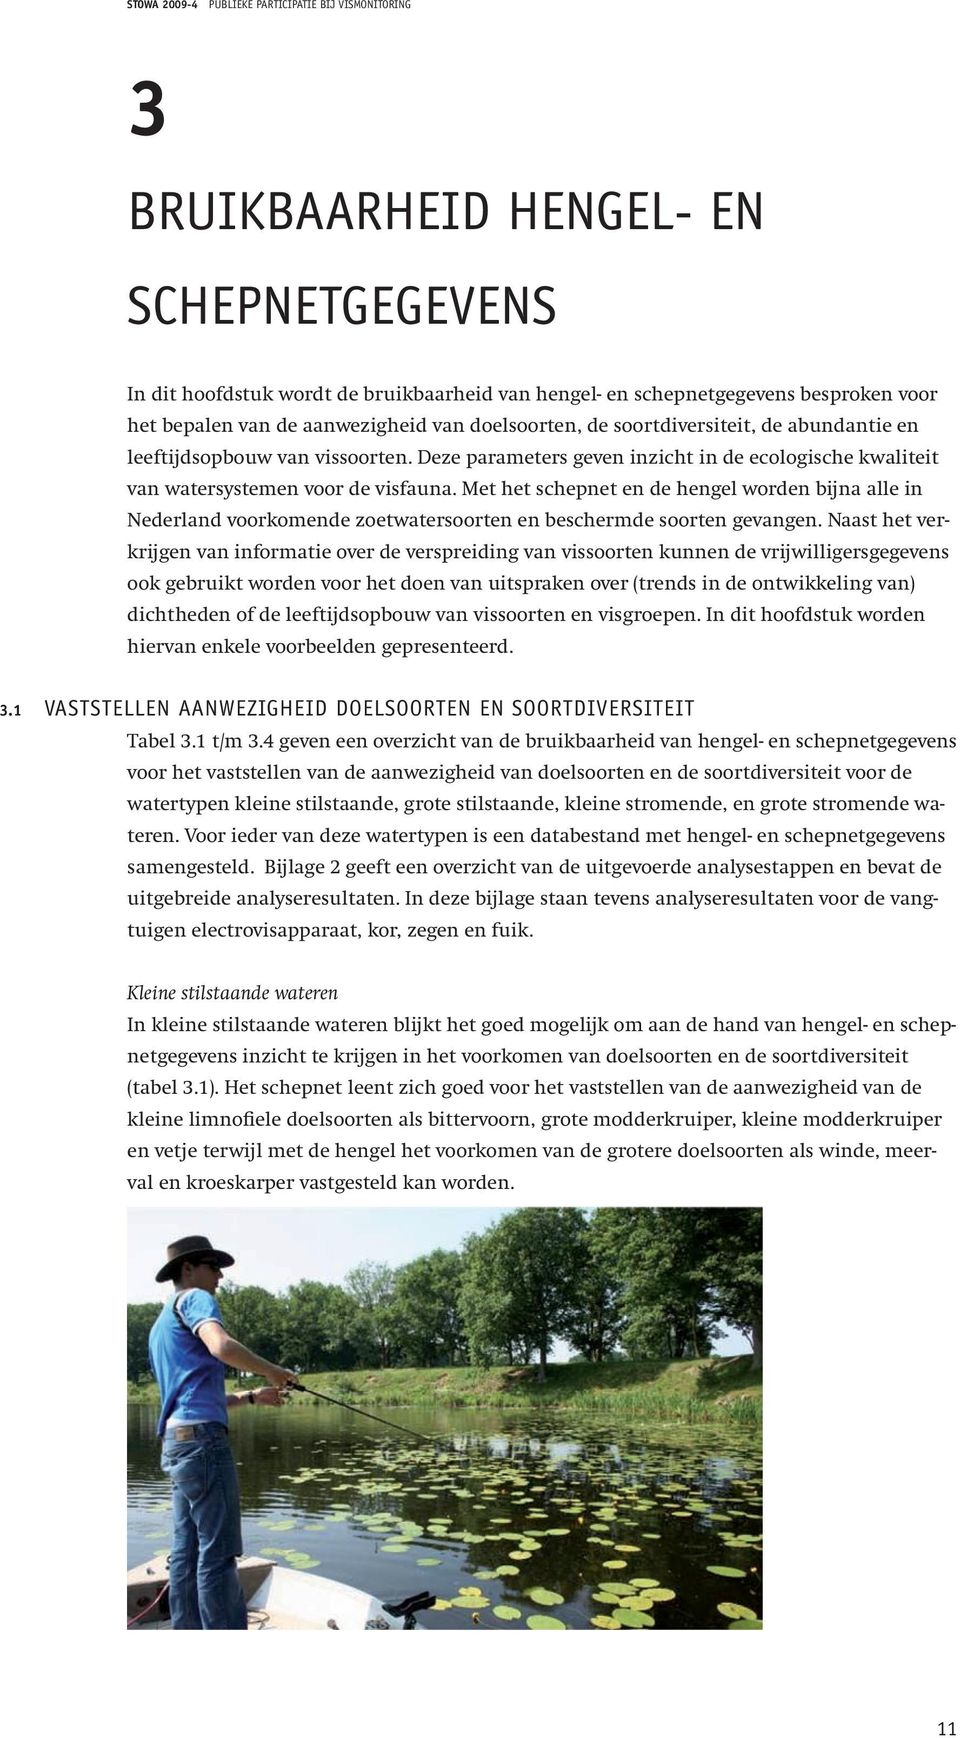 Met het schepnet en de hengel worden bijna alle in Nederland voorkomende zoetwatersoorten en beschermde soorten gevangen.